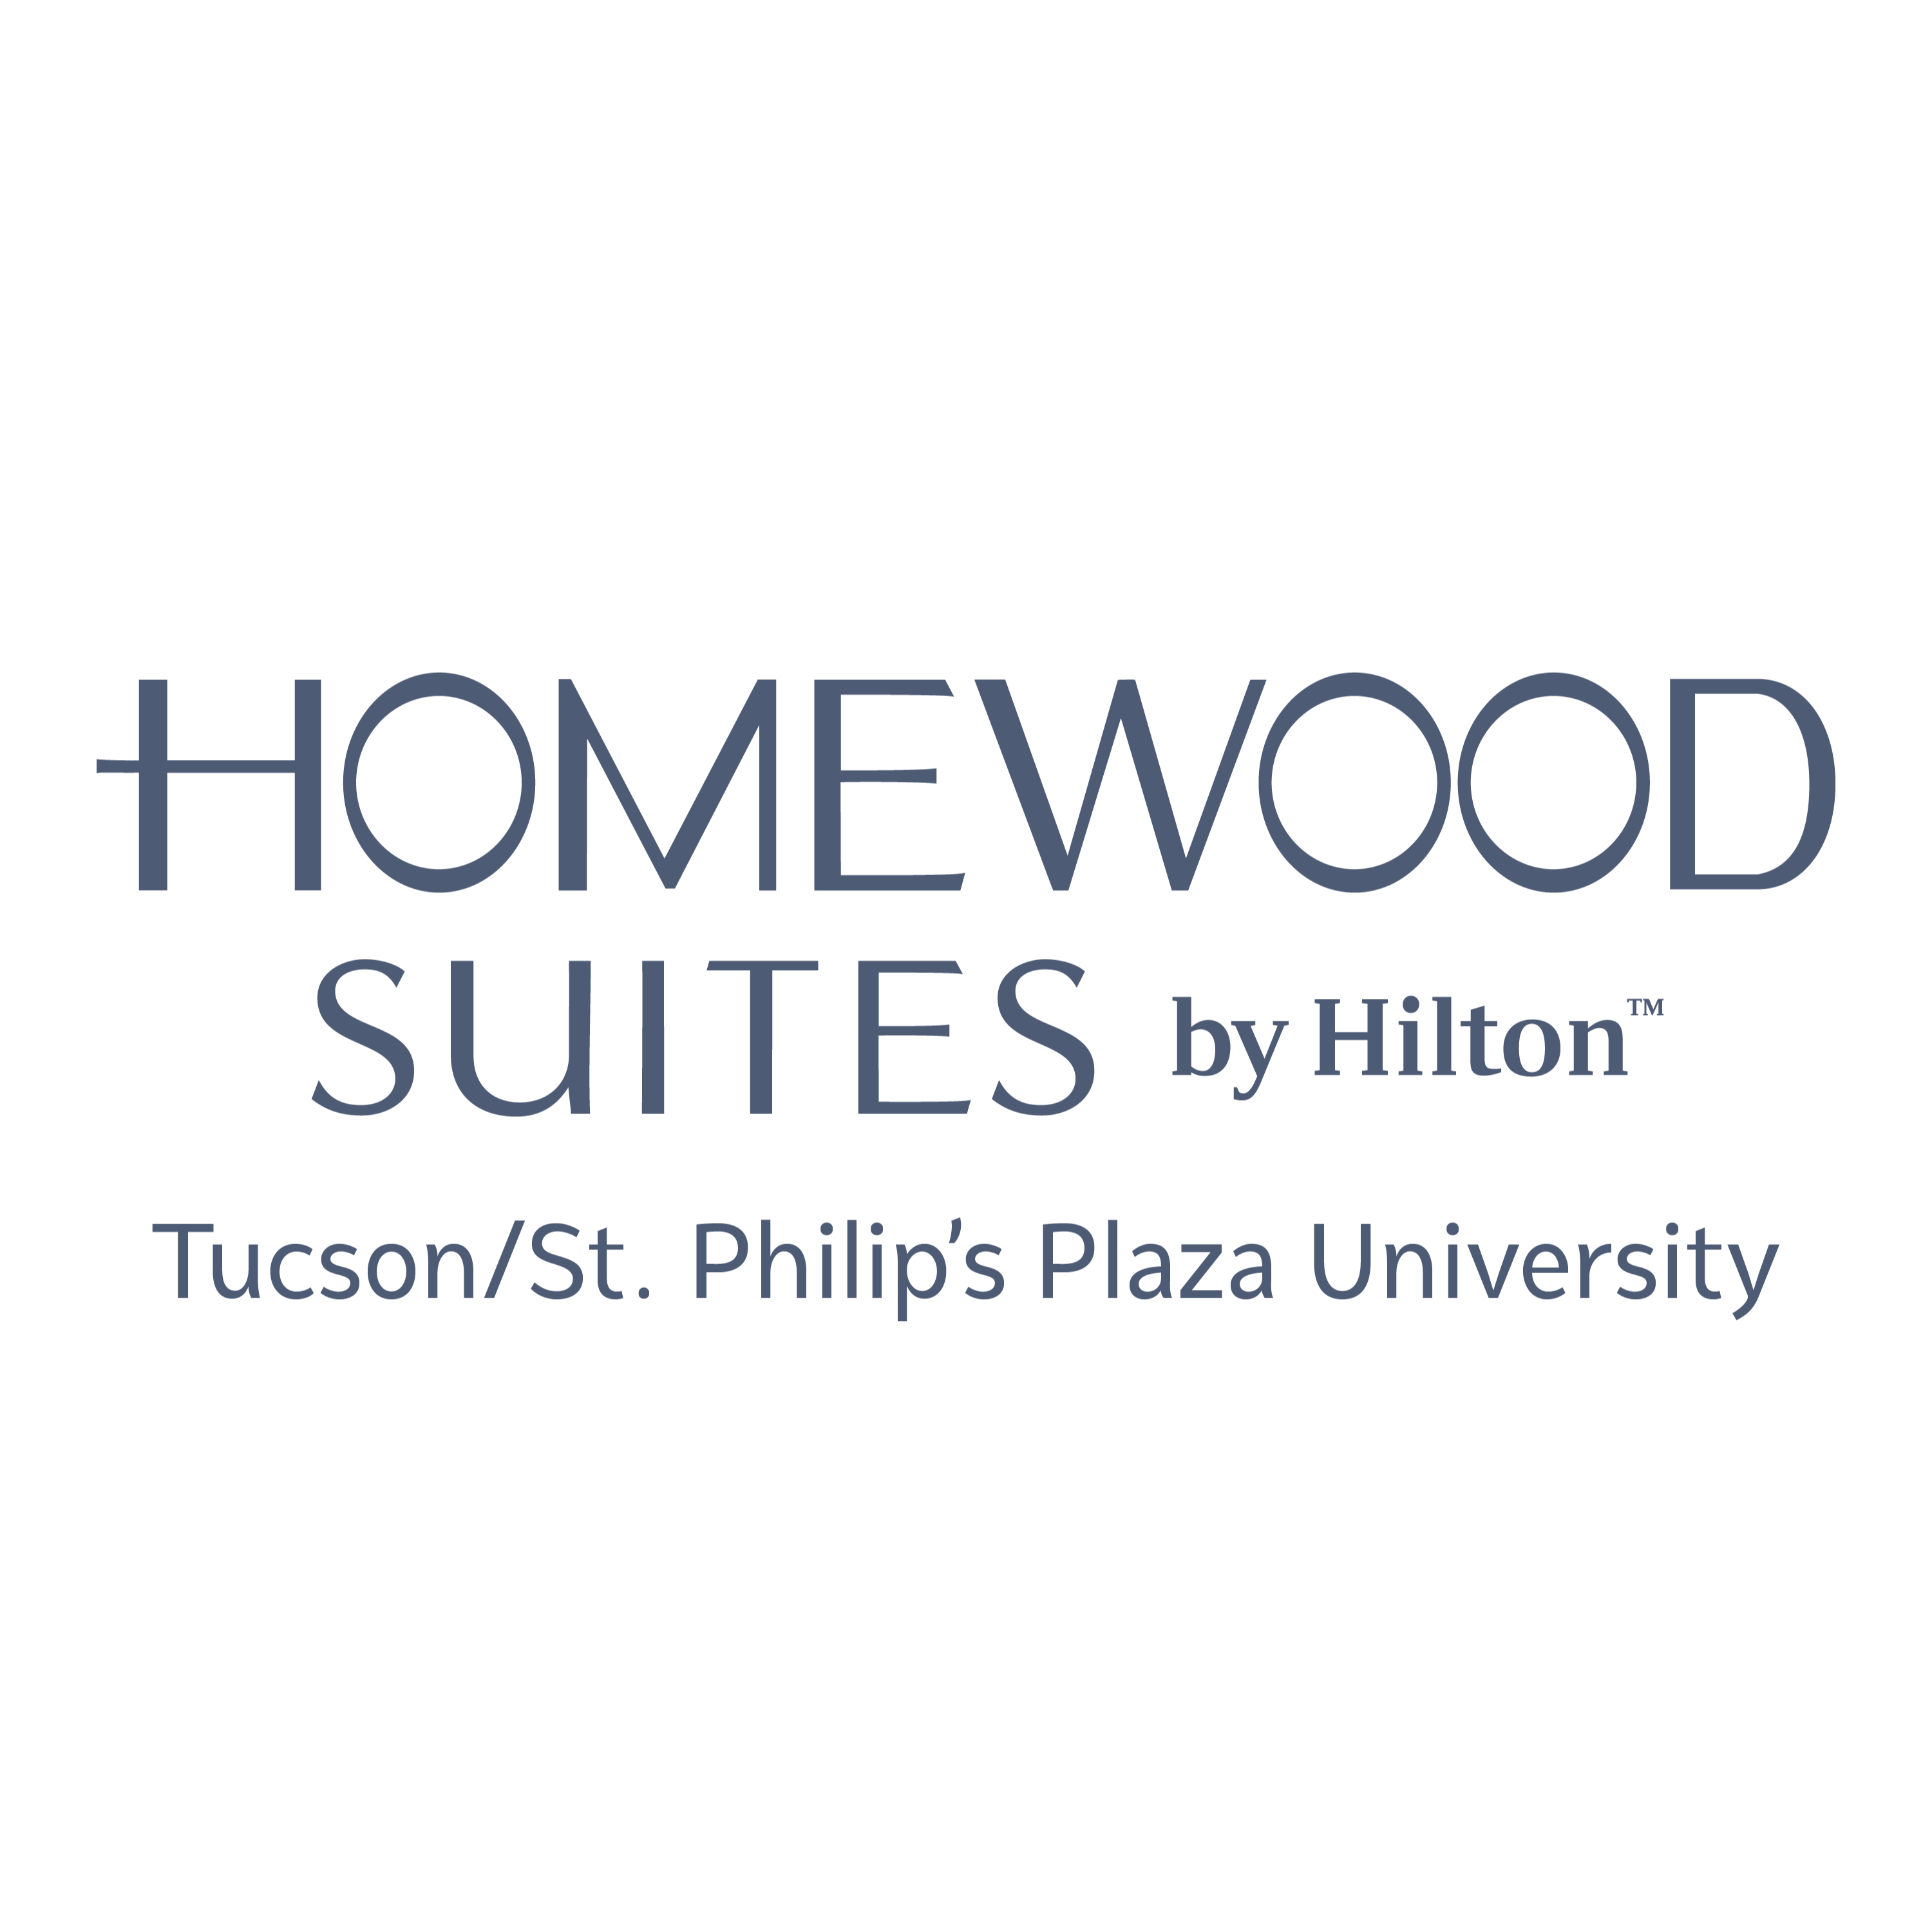 Homewood Suites by Hilton Tucson/St. Philip's Plaza University - Tucson, AZ 85718 - (520)577-0007 | ShowMeLocal.com